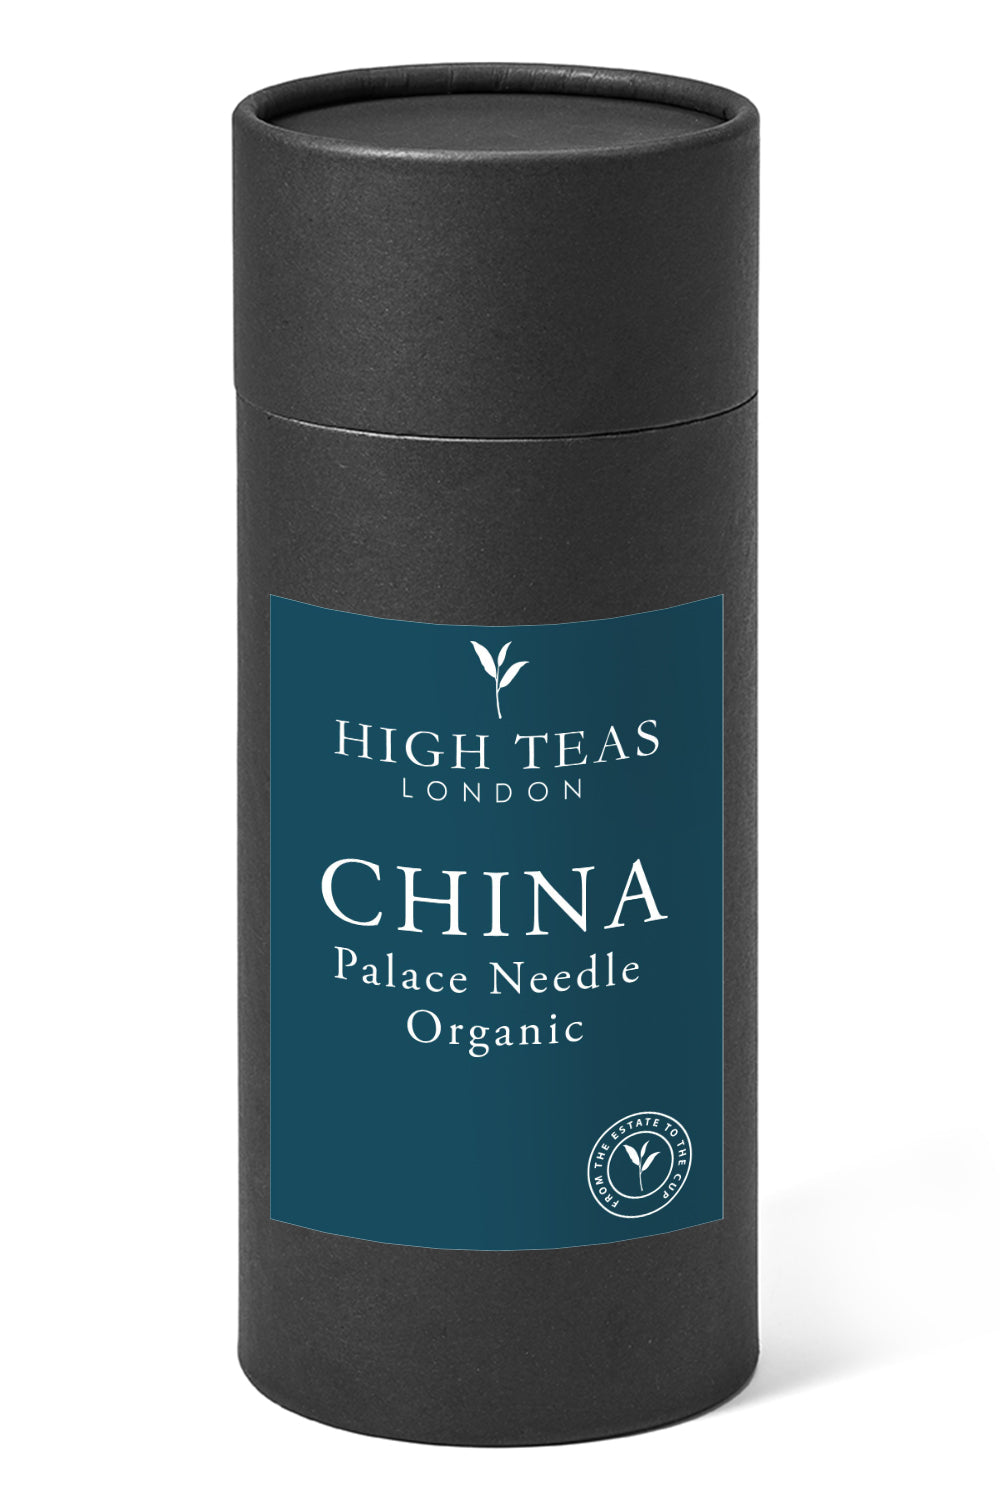 Palace Needle - Organic-150g gift-Loose Leaf Tea-High Teas